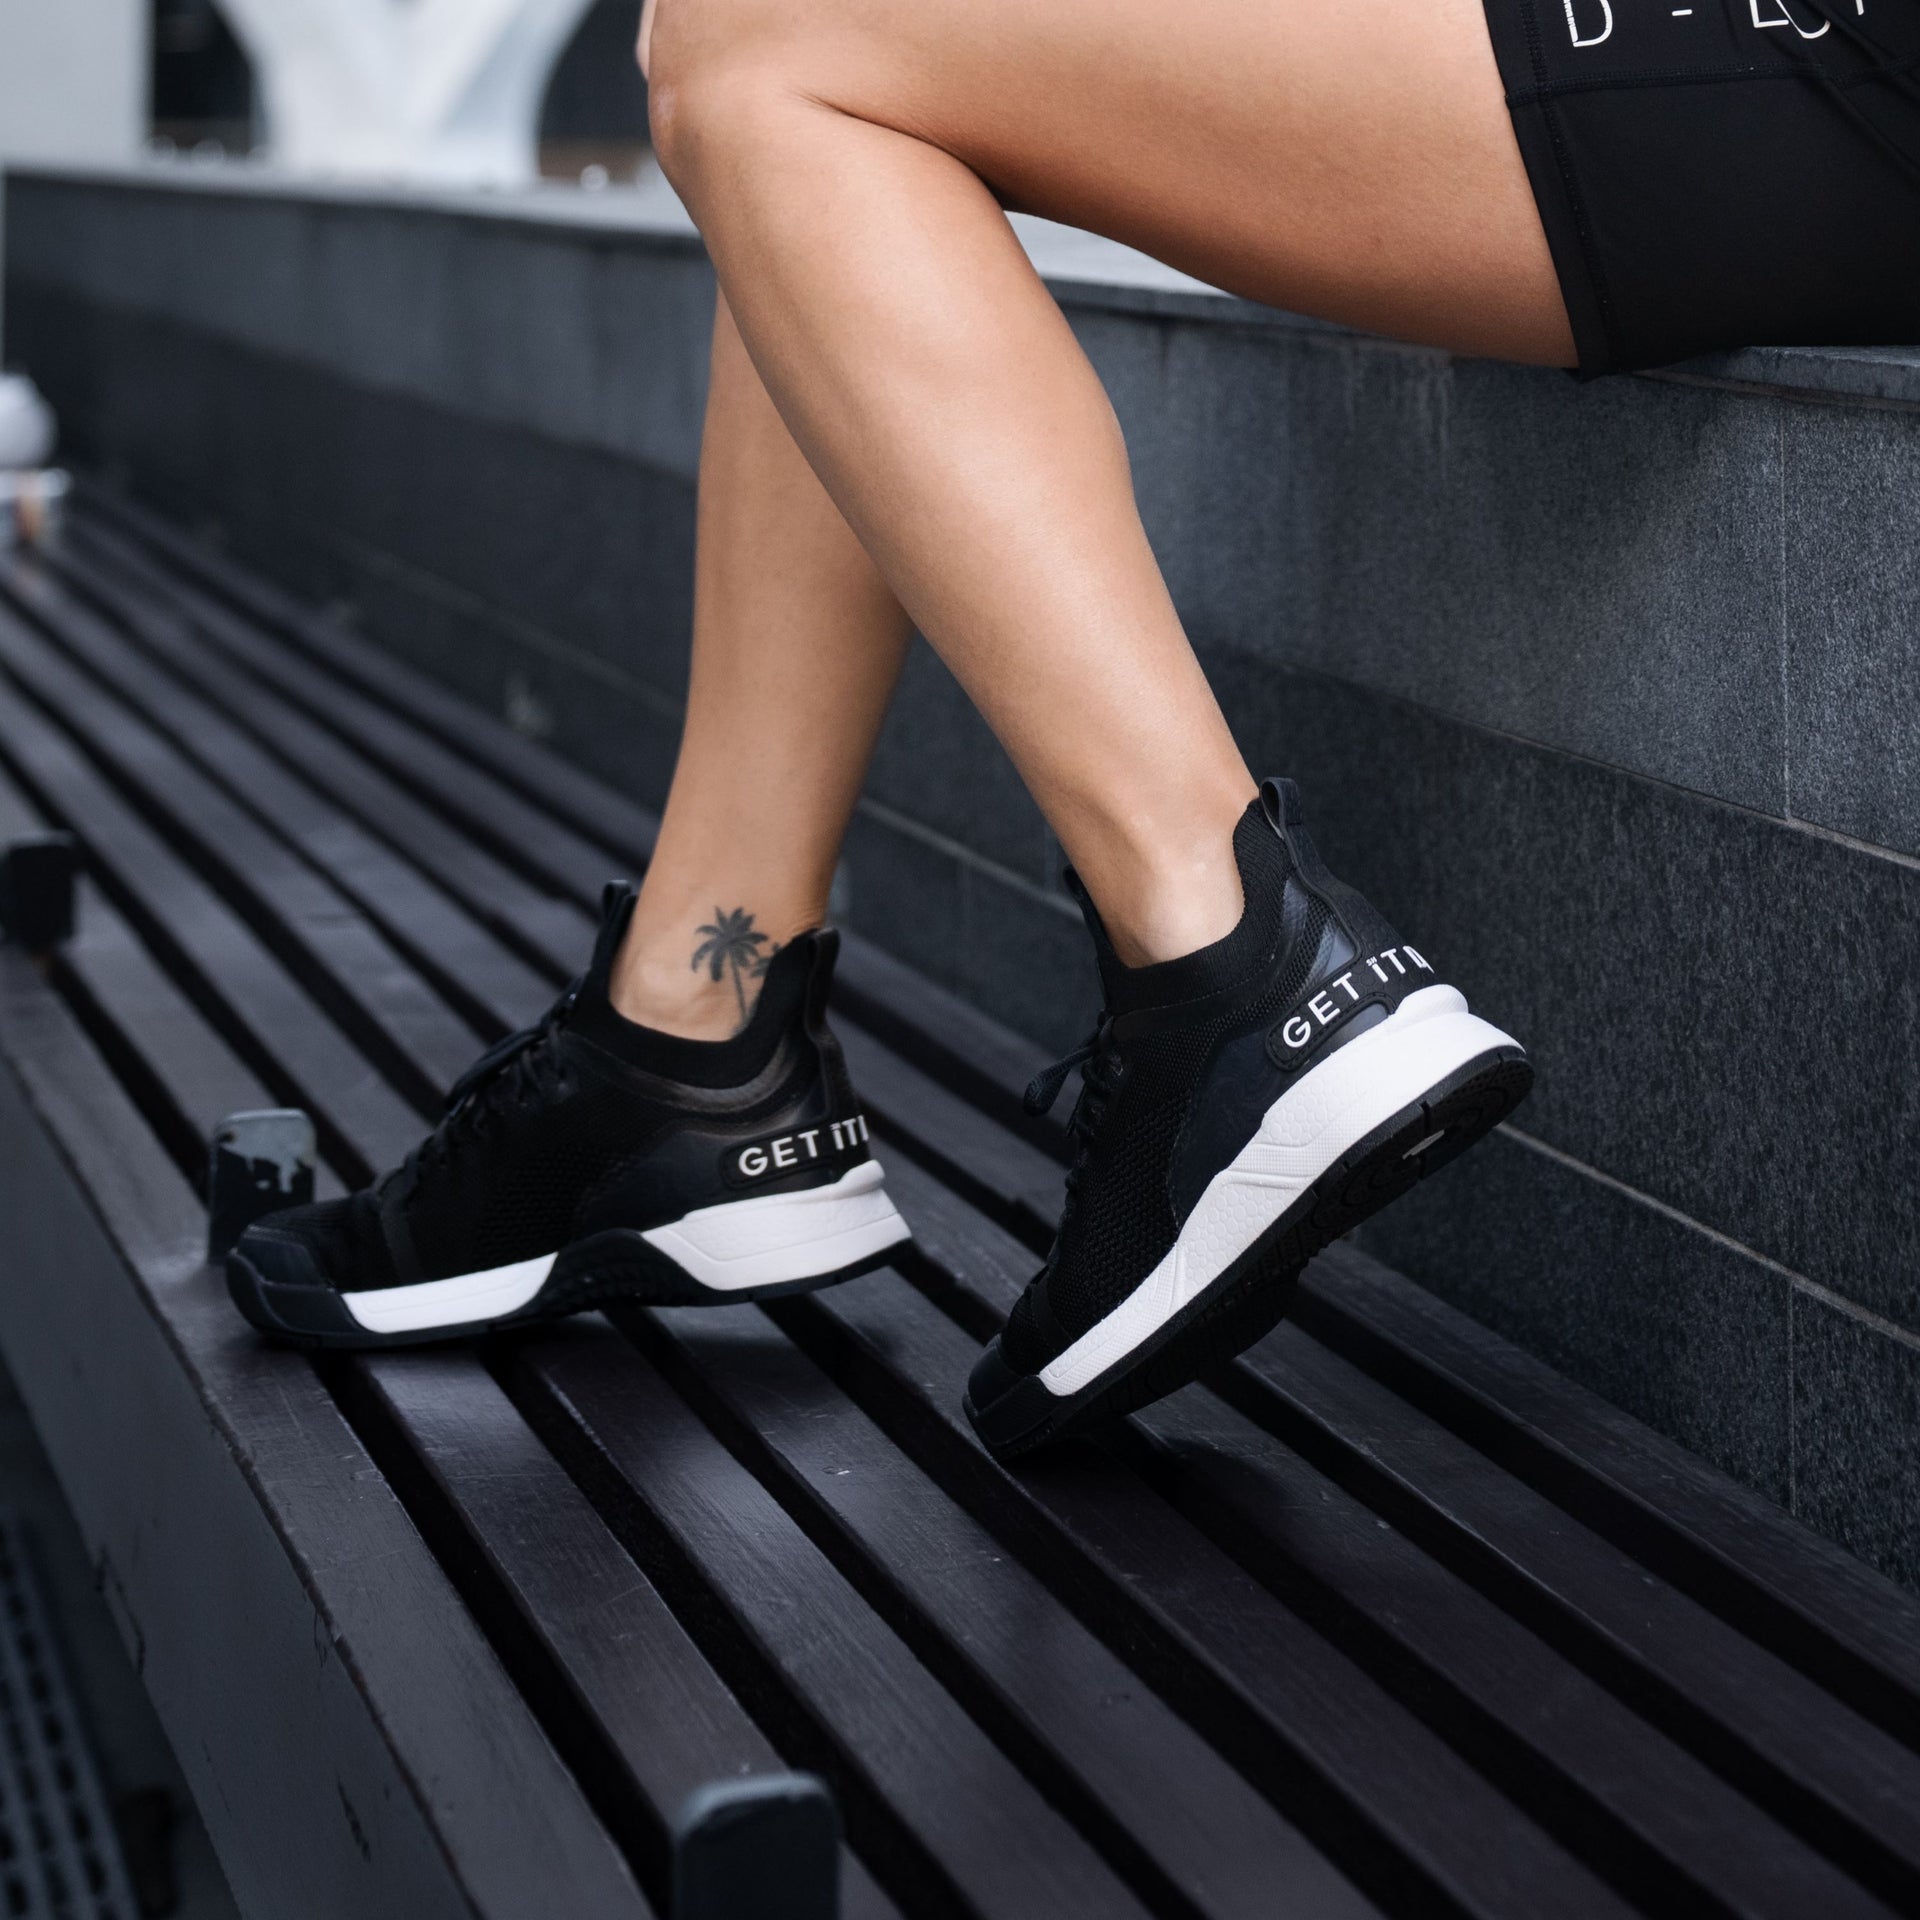 Low-Cut Workout Shoes Double-Black (Women's)